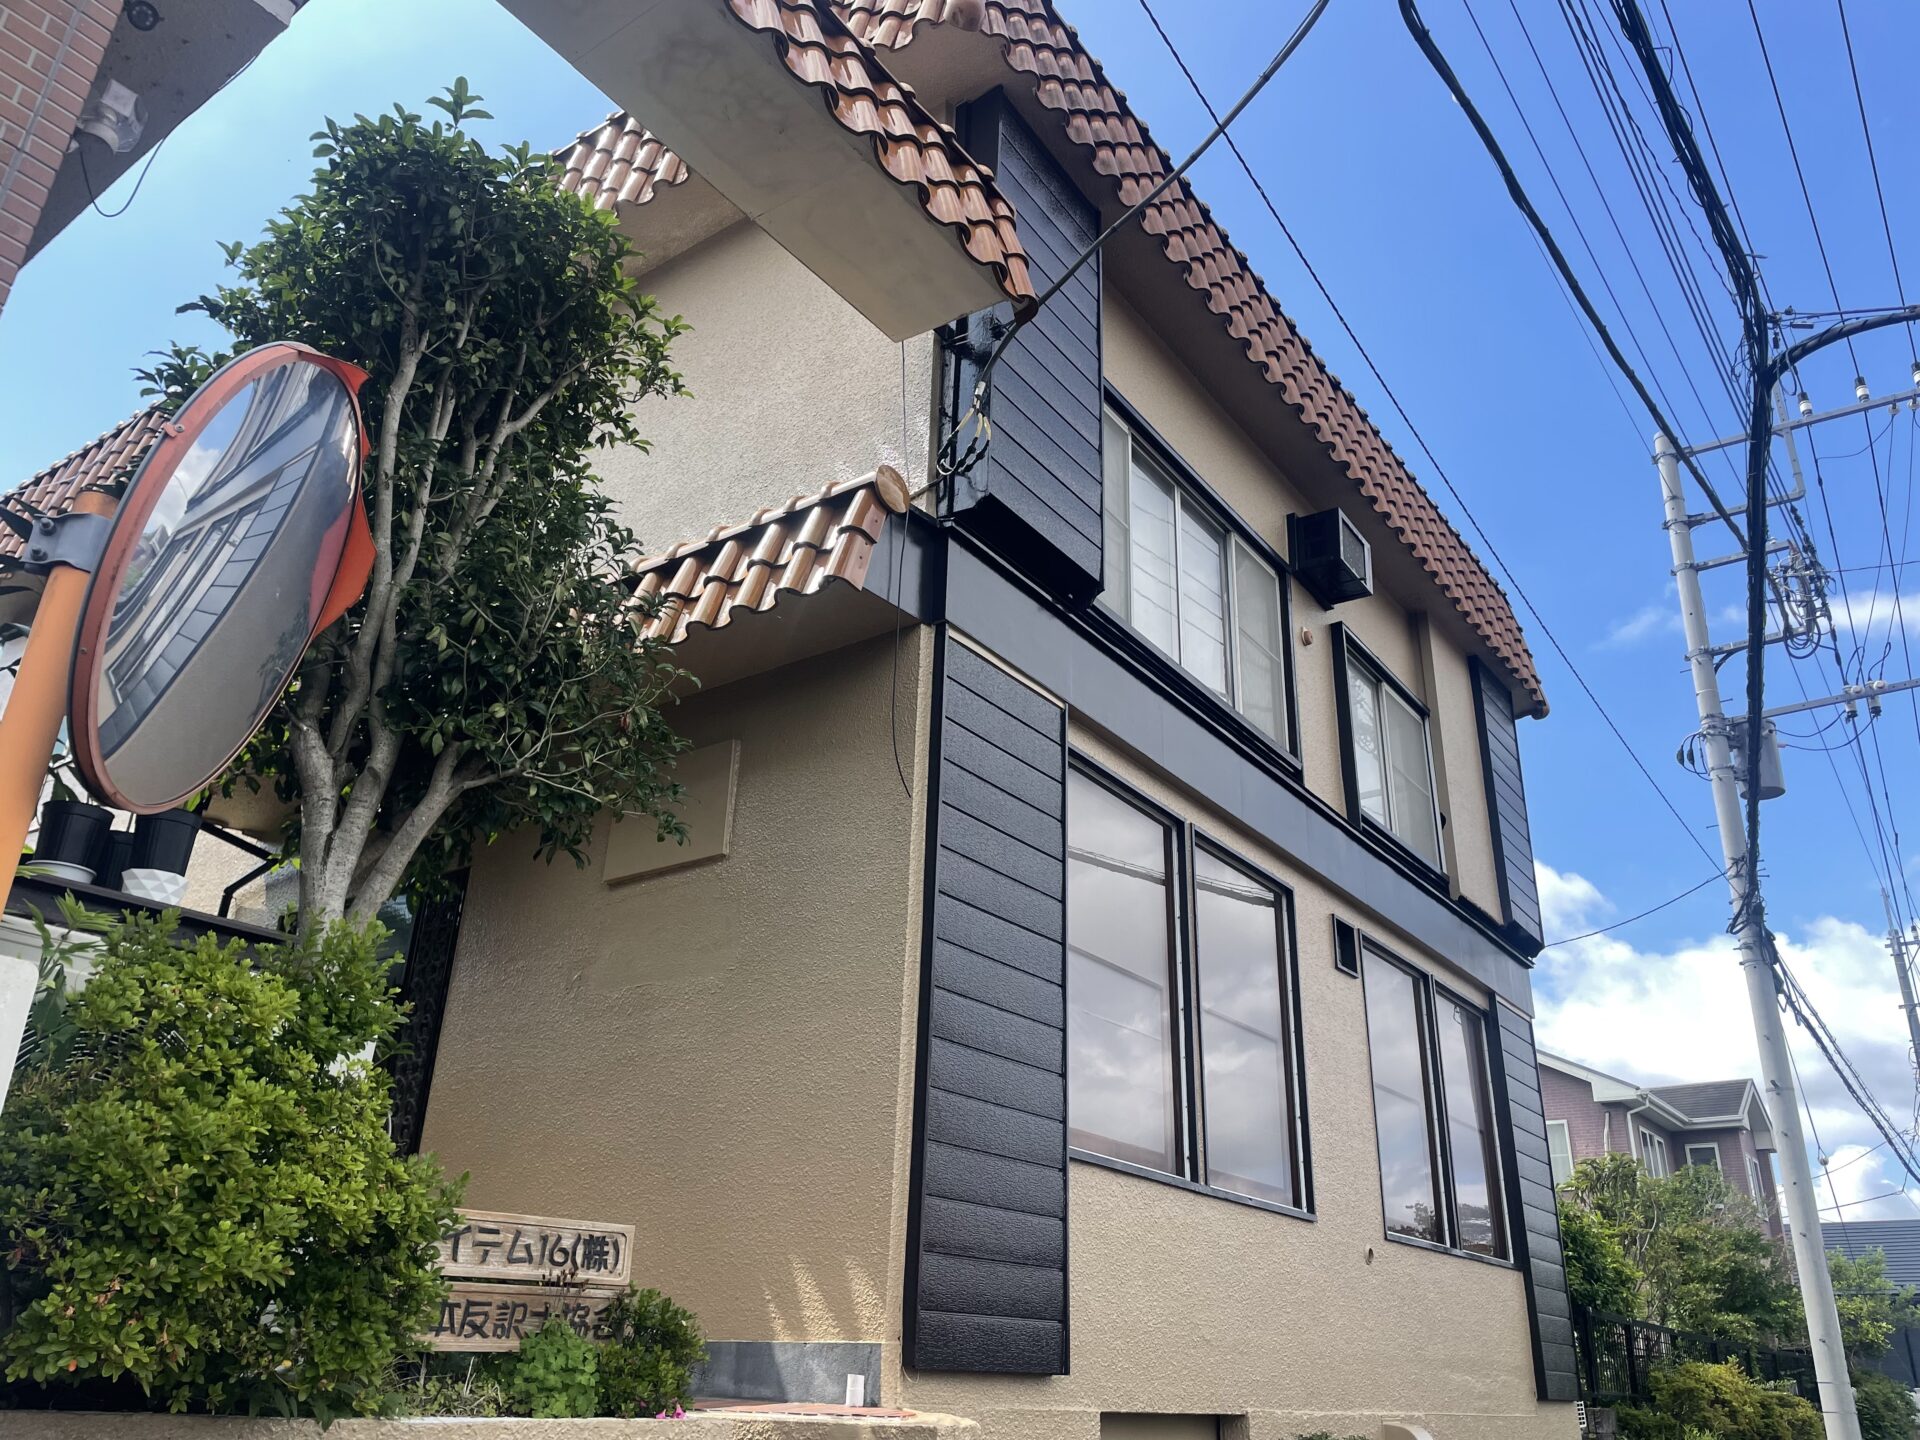 埼玉県吉見町で外壁はブラウン系、屋根は断熱塗料のキルコで塗装を行いました！施工後